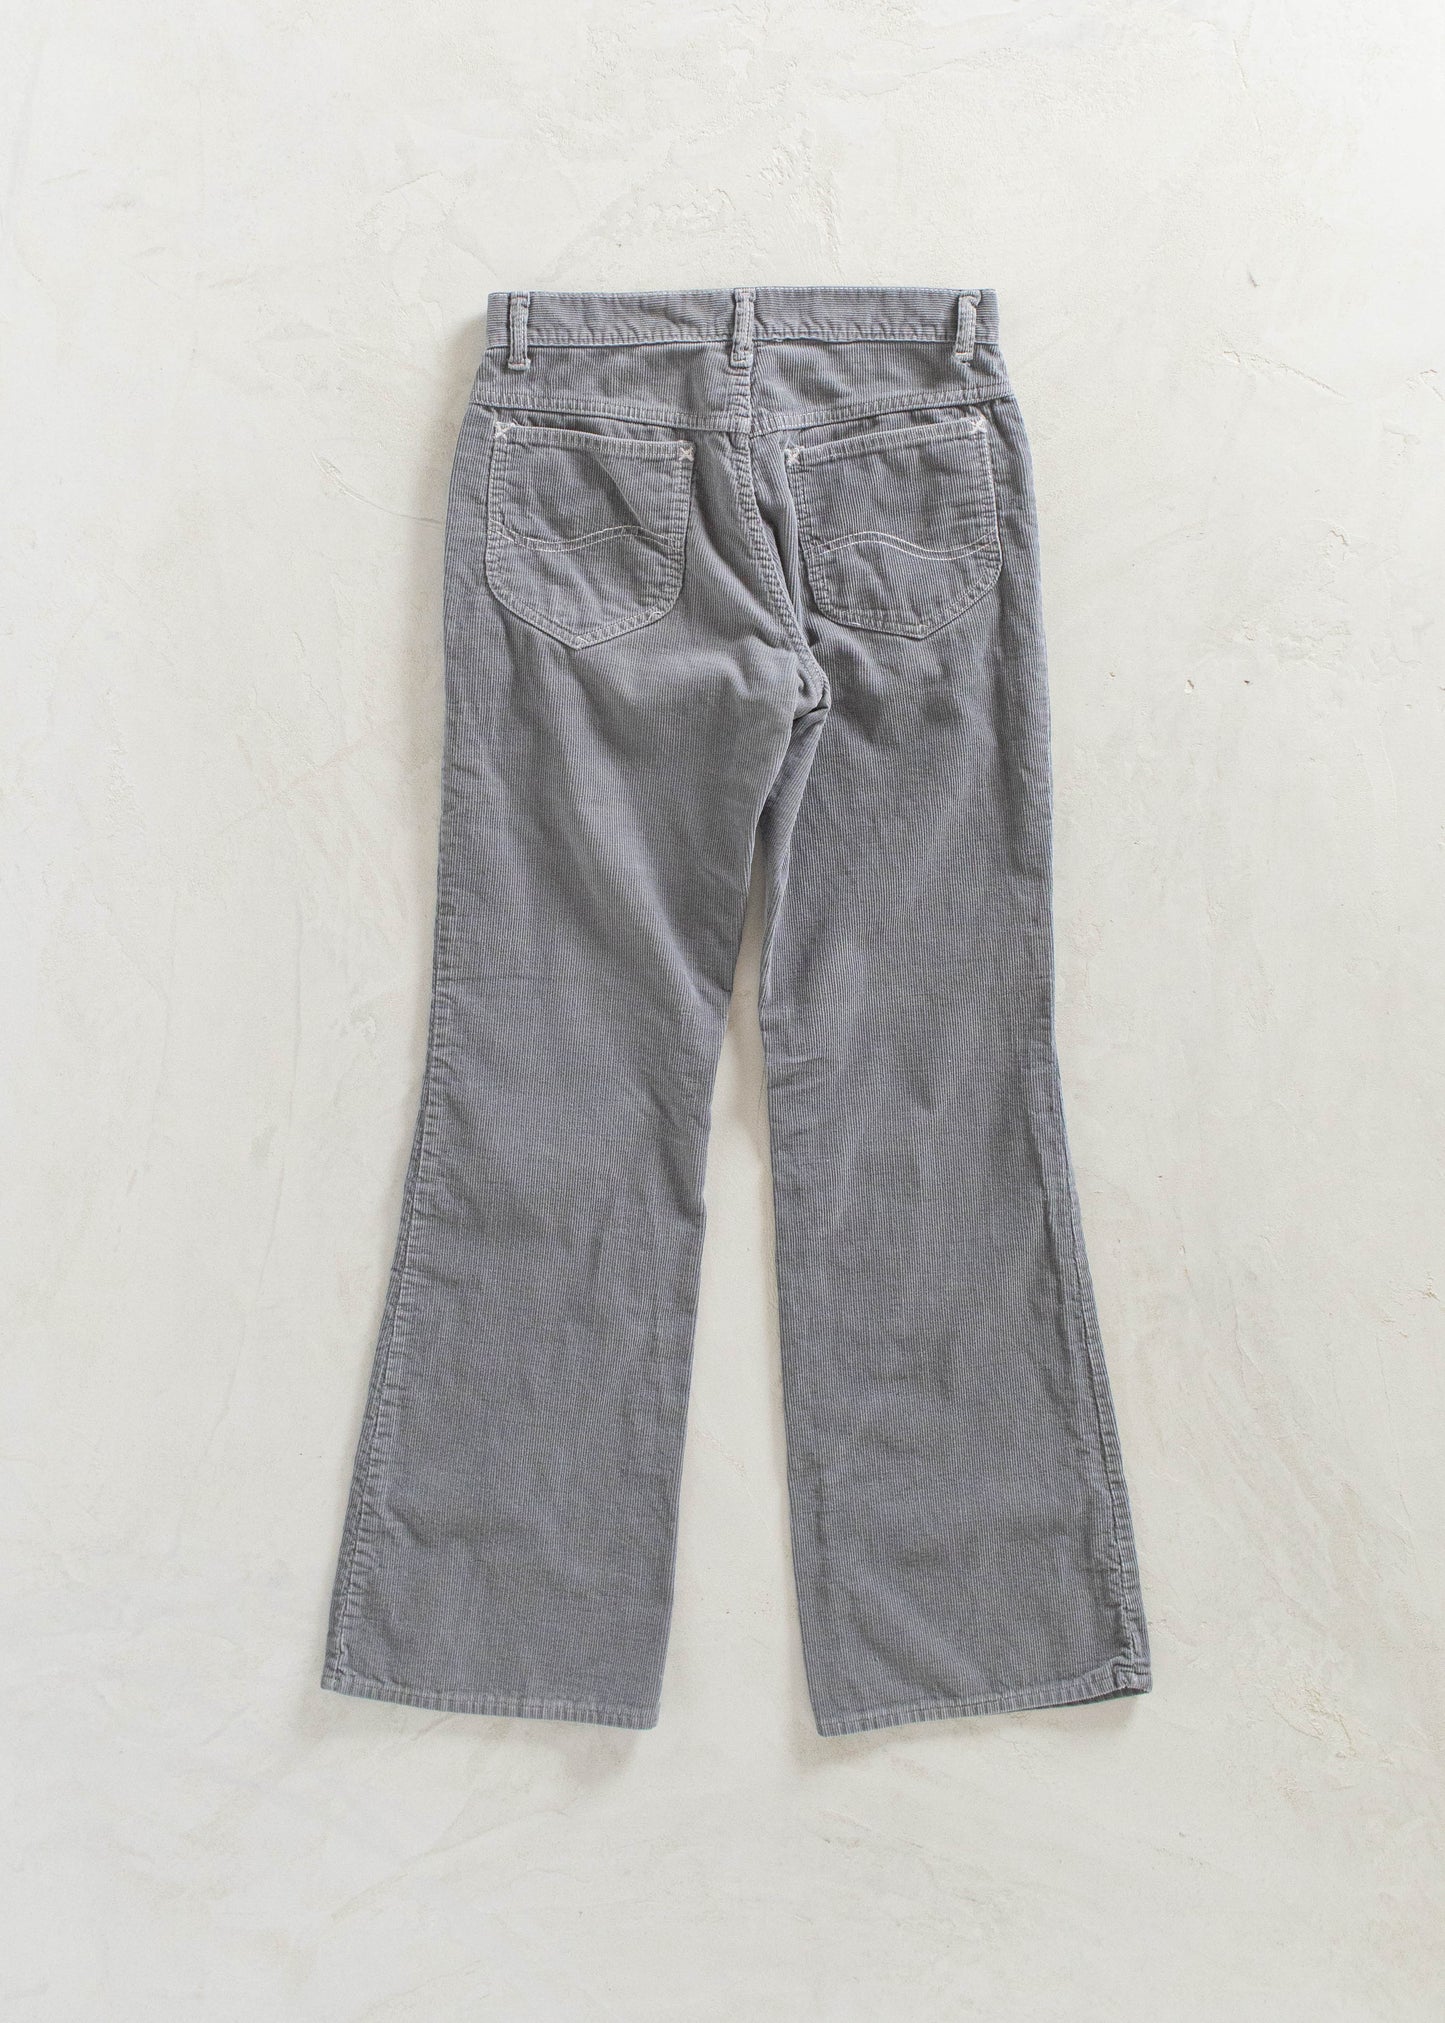 Vintage Lee Flare Corduroy Pants Size Women's 27 Men's 30